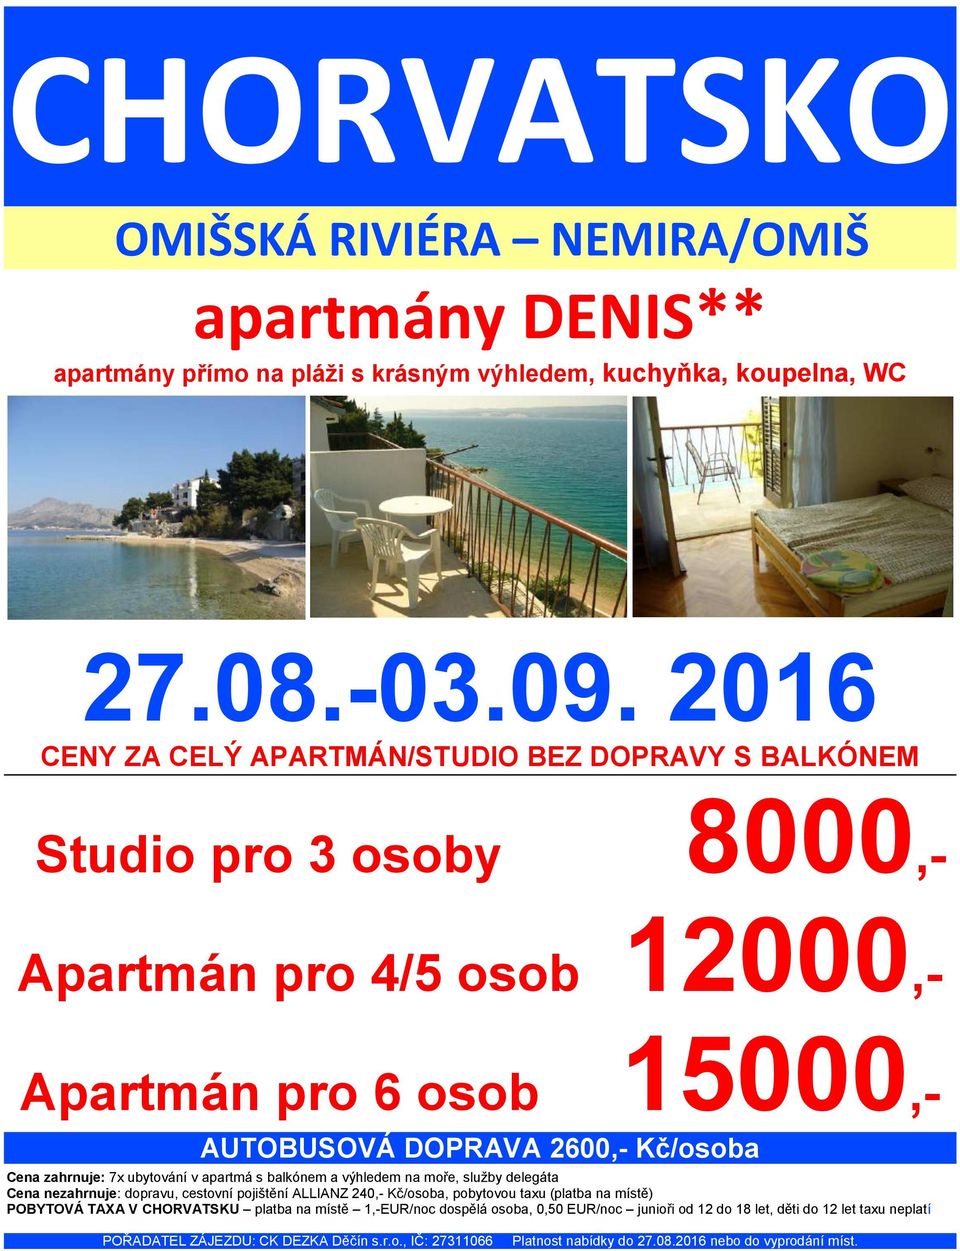 AUTOBUSOVÁ DOPRAVA 2600,- Kč/osoba Cena zahrnuje: 7x ubytování v apartmá s balkónem a výhledem na moře, služby delegáta Cena